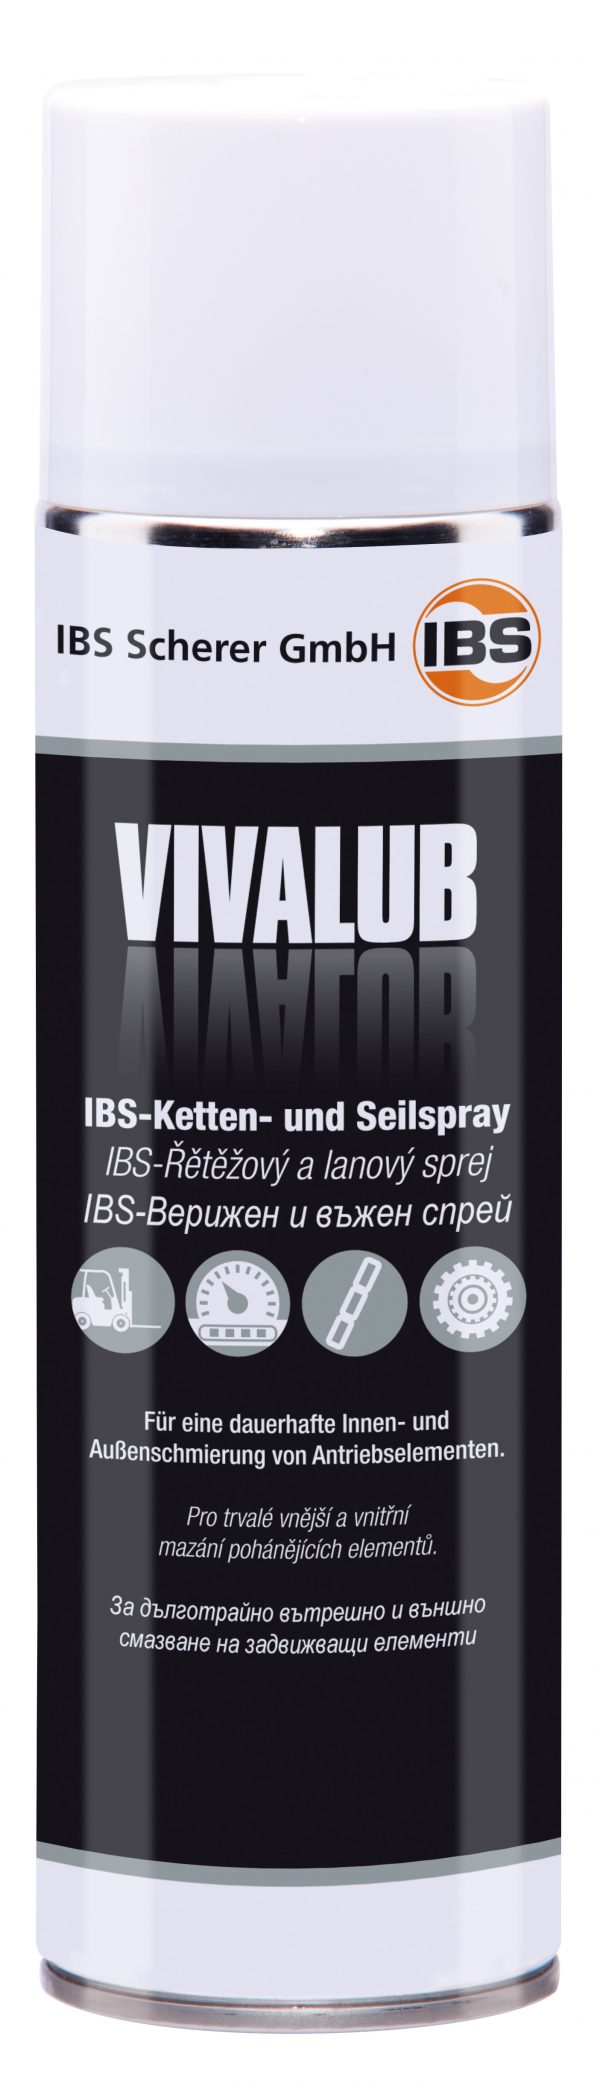 IBS-Ketten- und Seilspray VivaLub